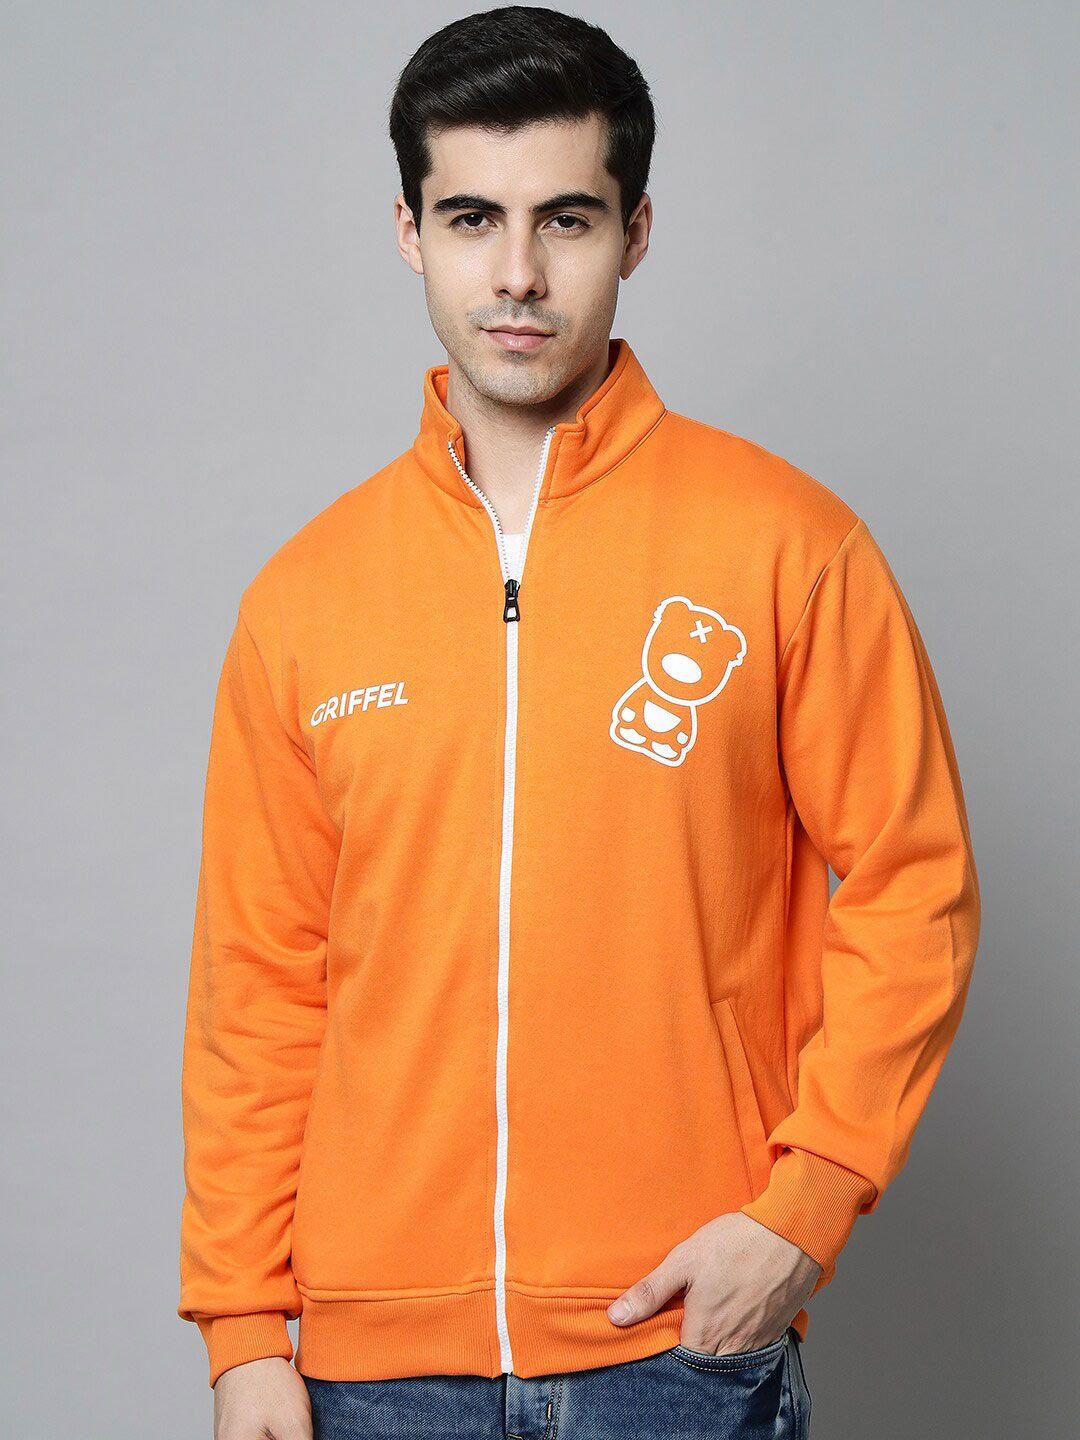 griffel-men-orange-fleece-printed-sweatshirt